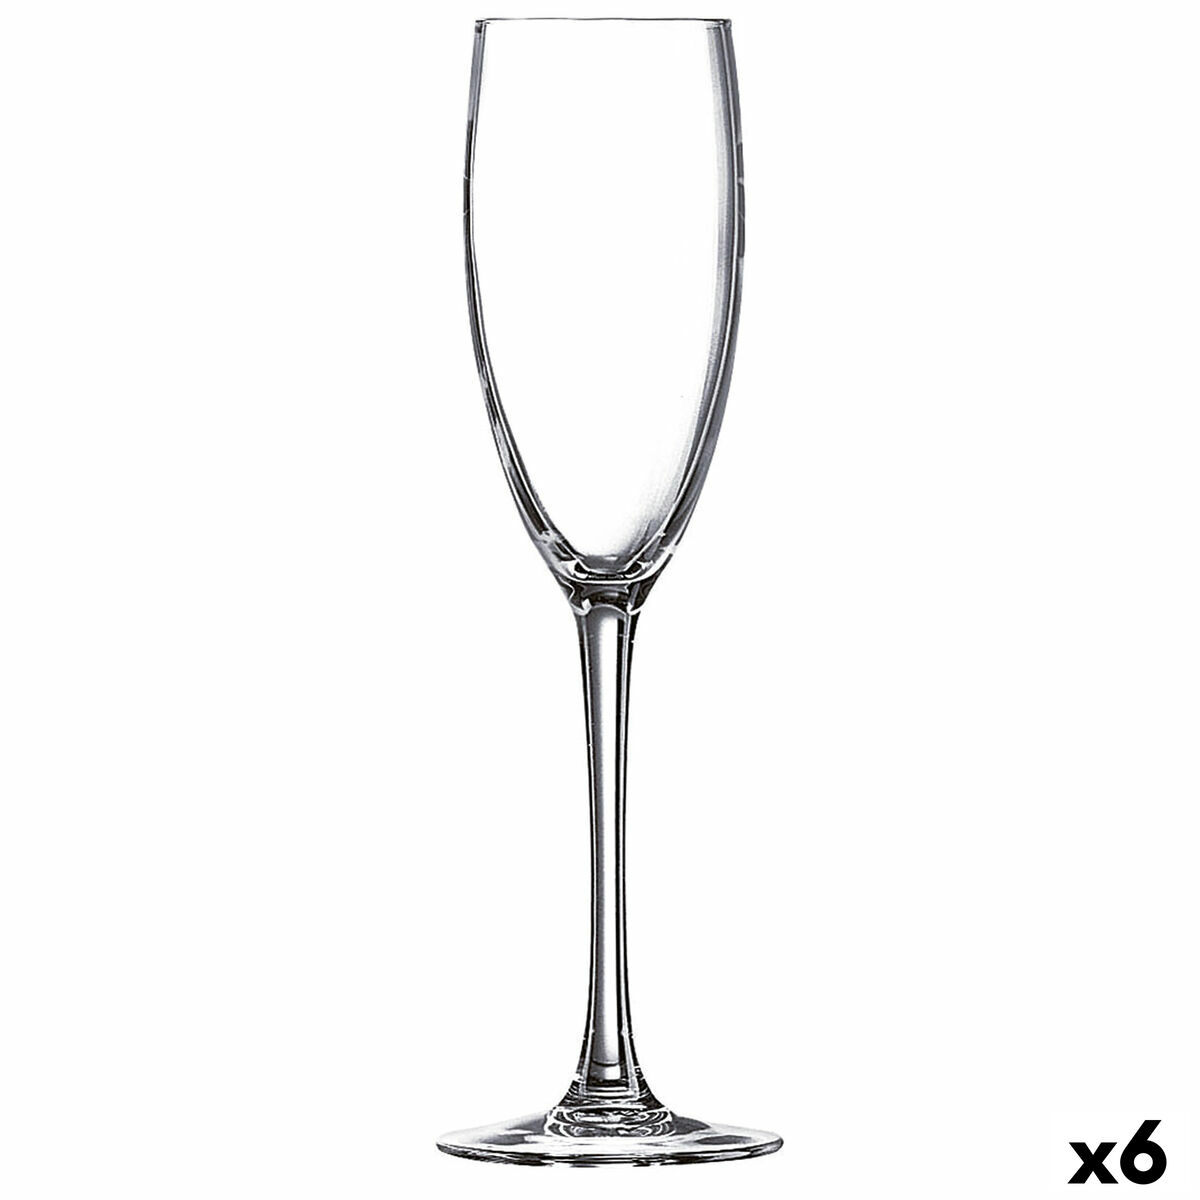 Coupe de champagne Luminarc La Cave Transparent verre (160 ml) (6 Unités)